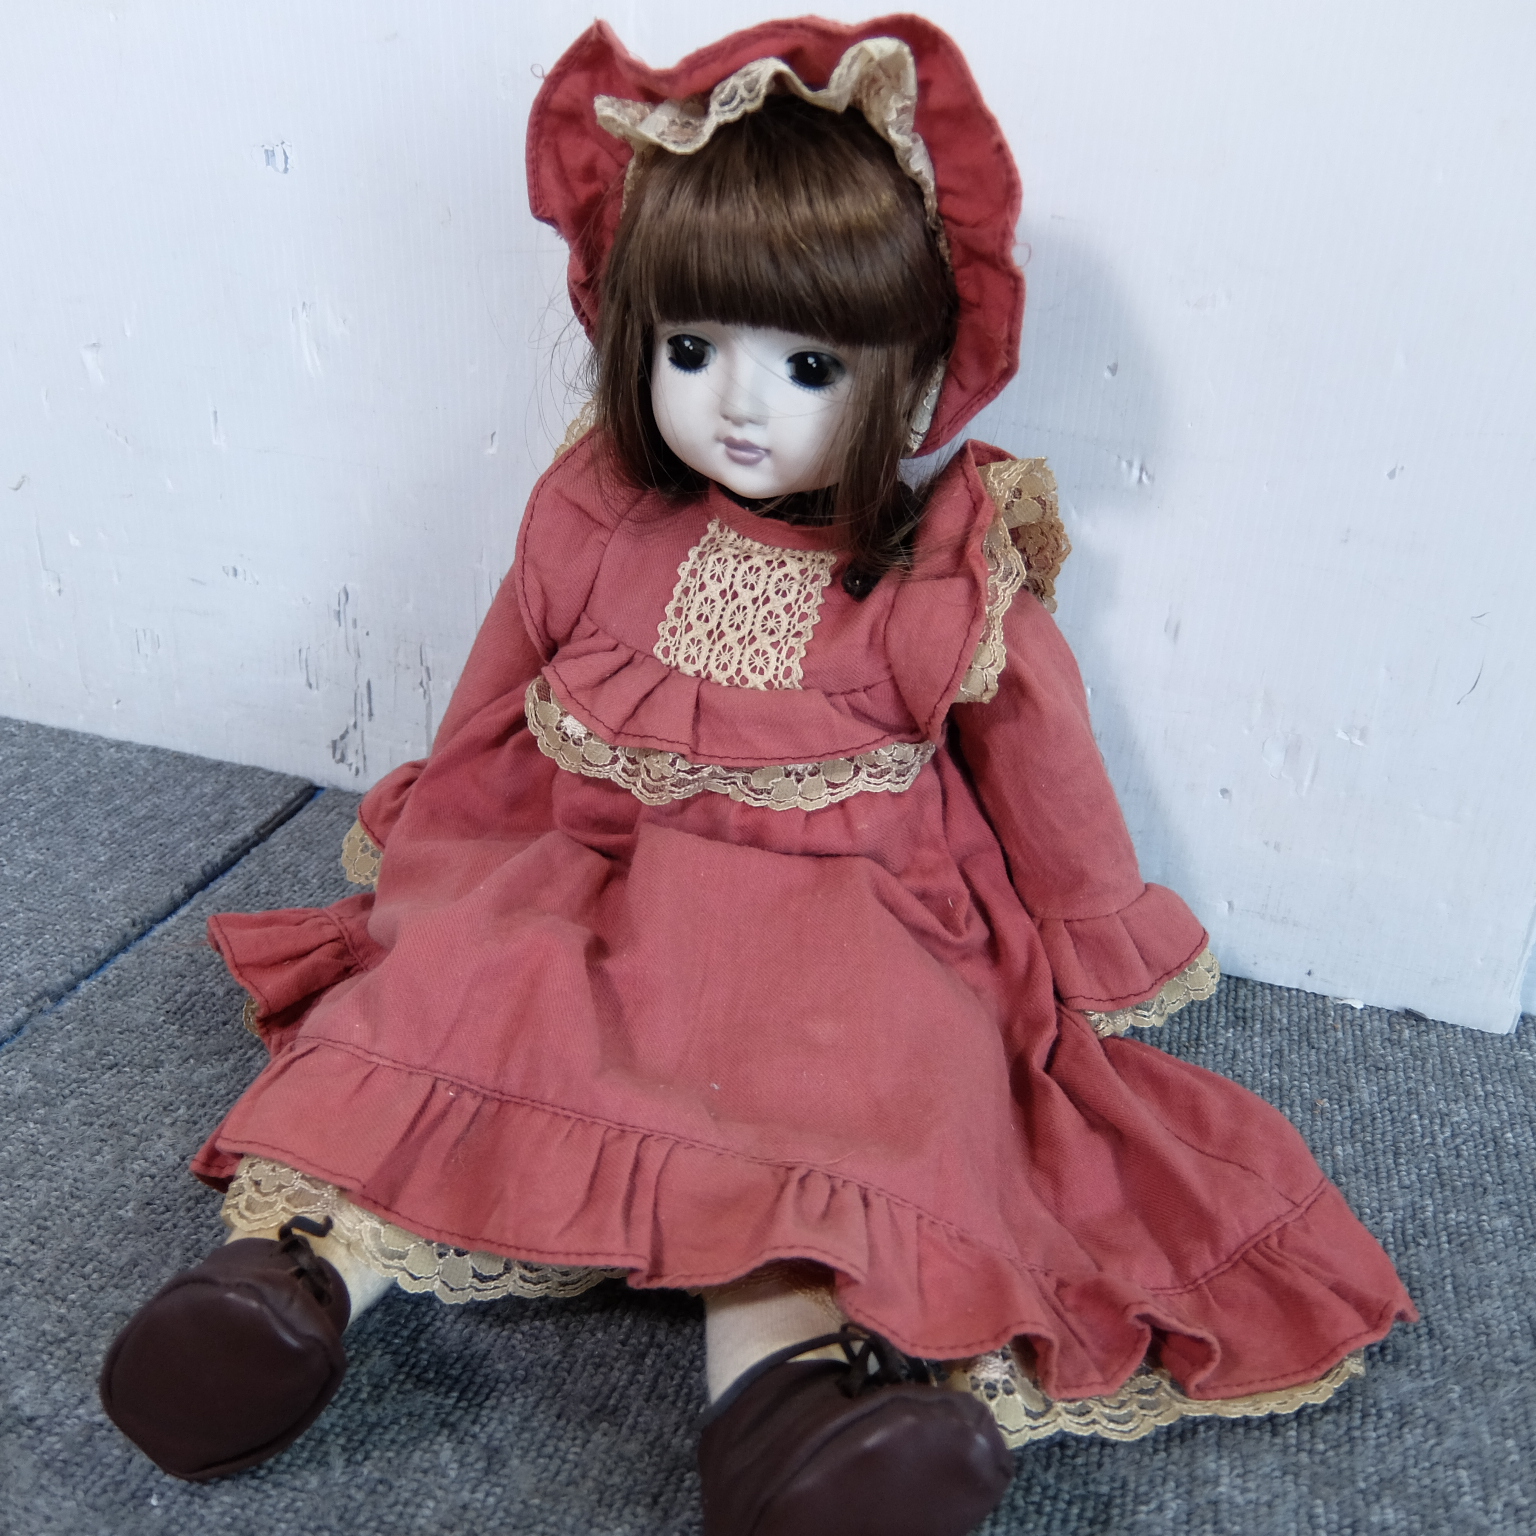 神戸市芦屋市のお客様より海外の人形を買取しました 不用品買取 回収の出張買取バイヤーズ